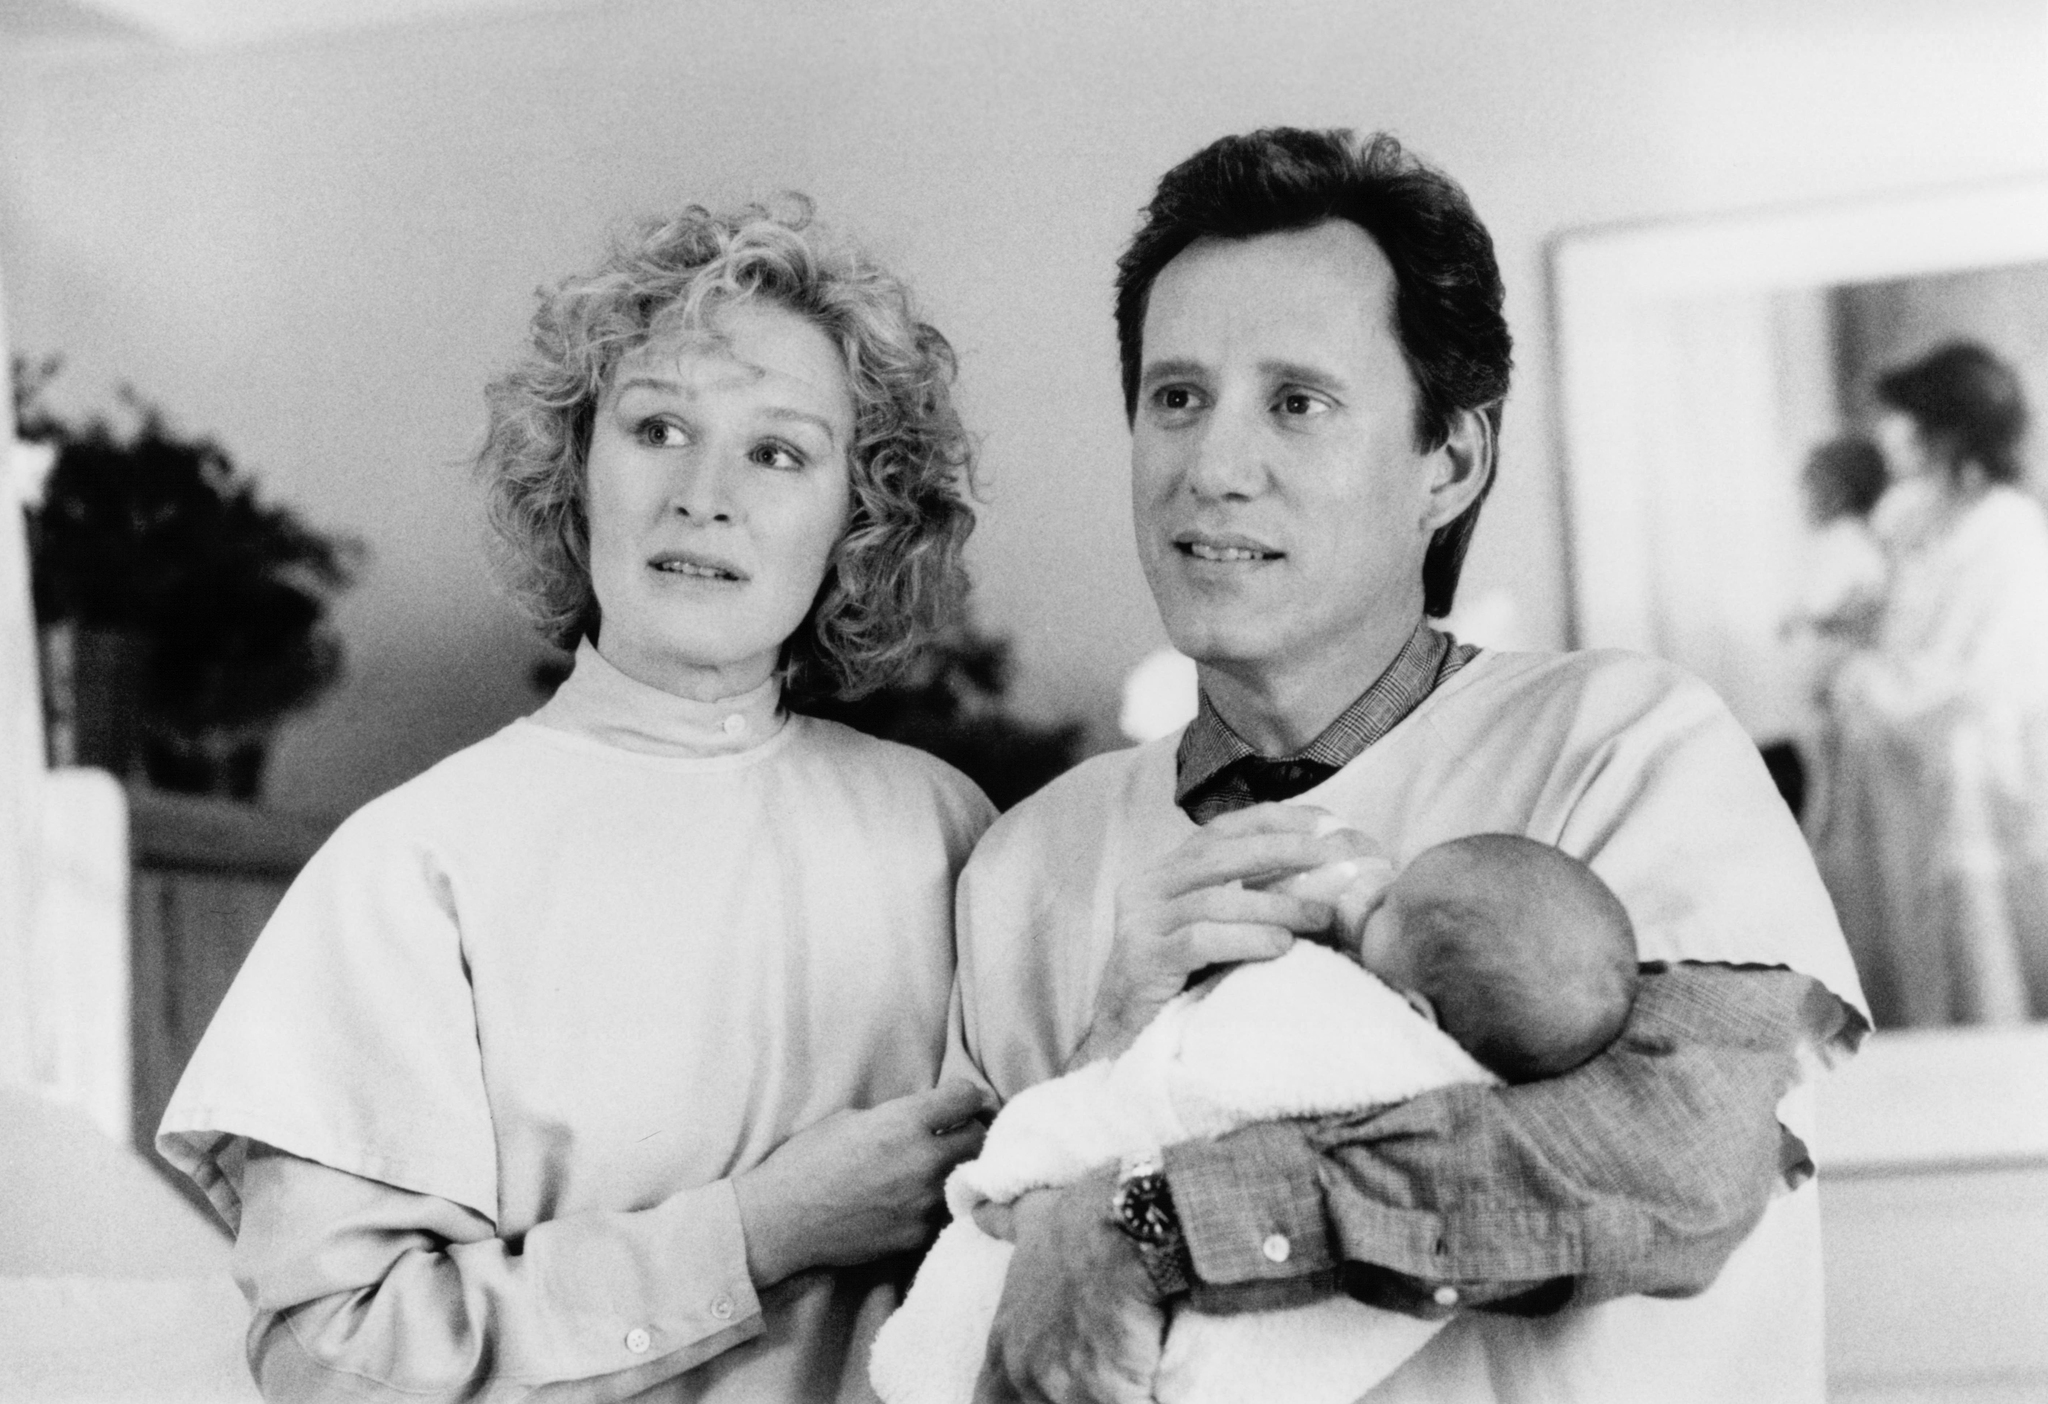 Imagini Immediate Family (1989) - Imagini Familia adoptivă ...